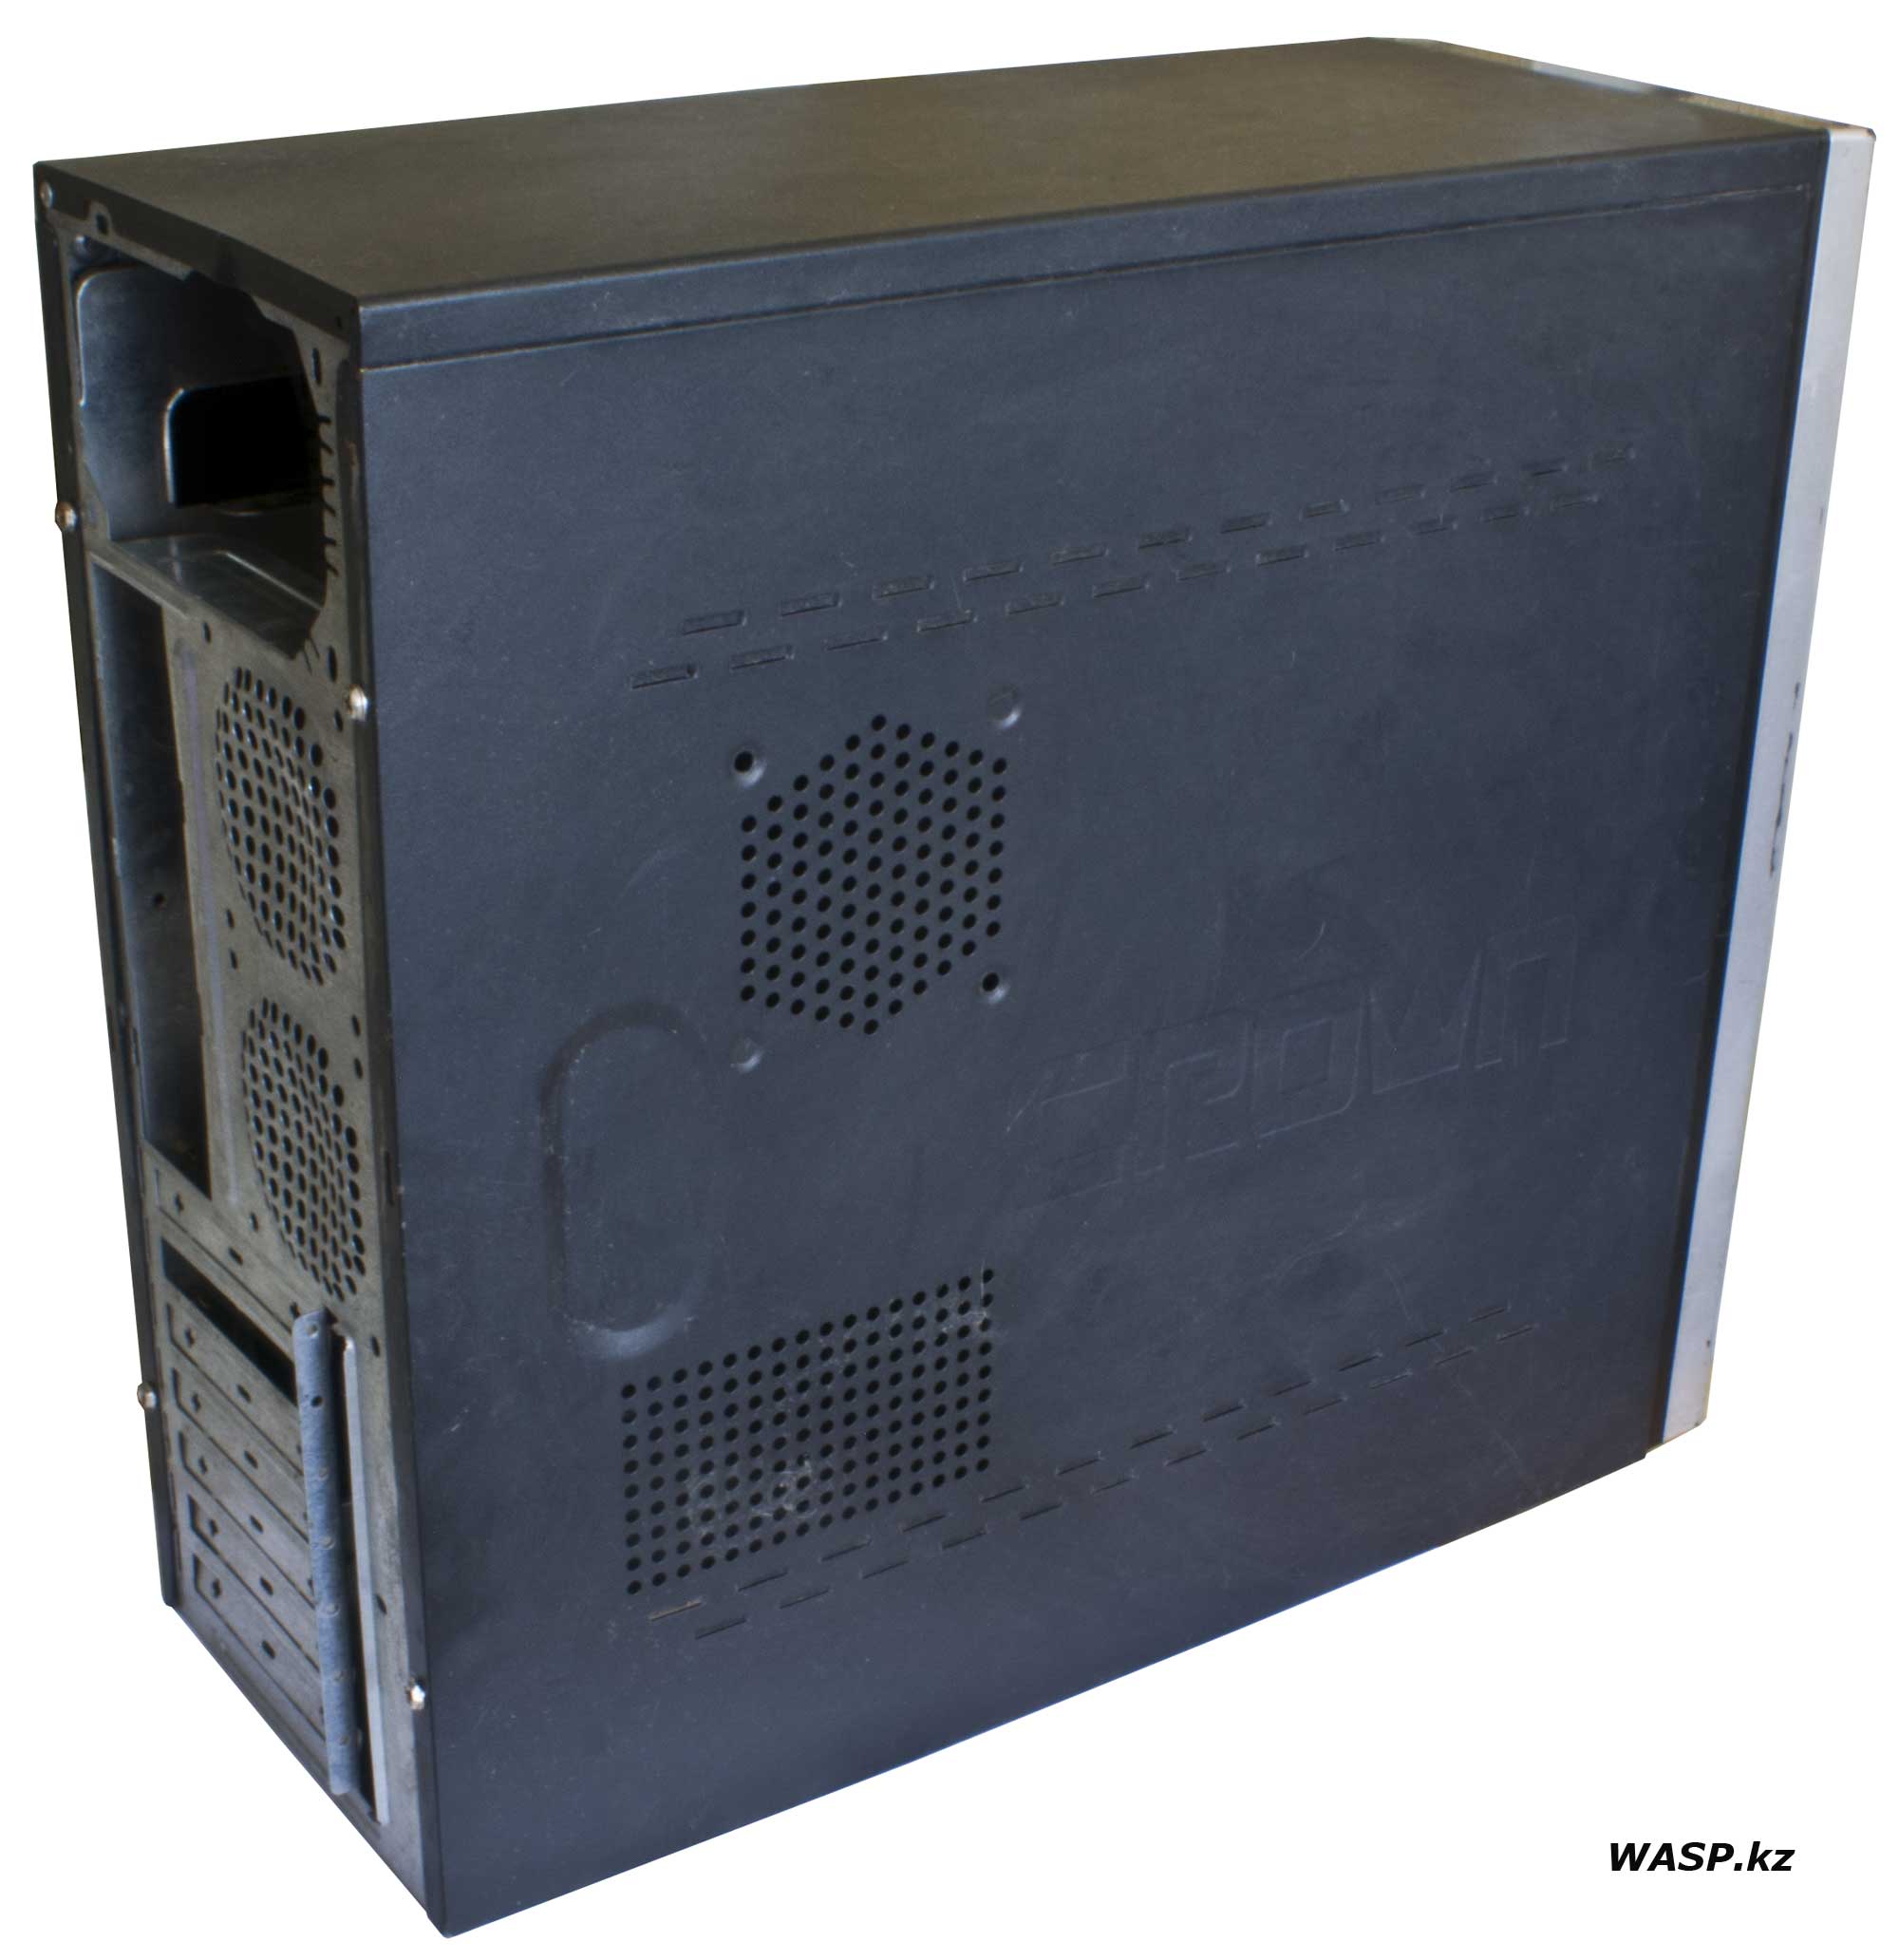 Обзор Crown корпус для компьютера - системного блока, вентиляционные отверстия